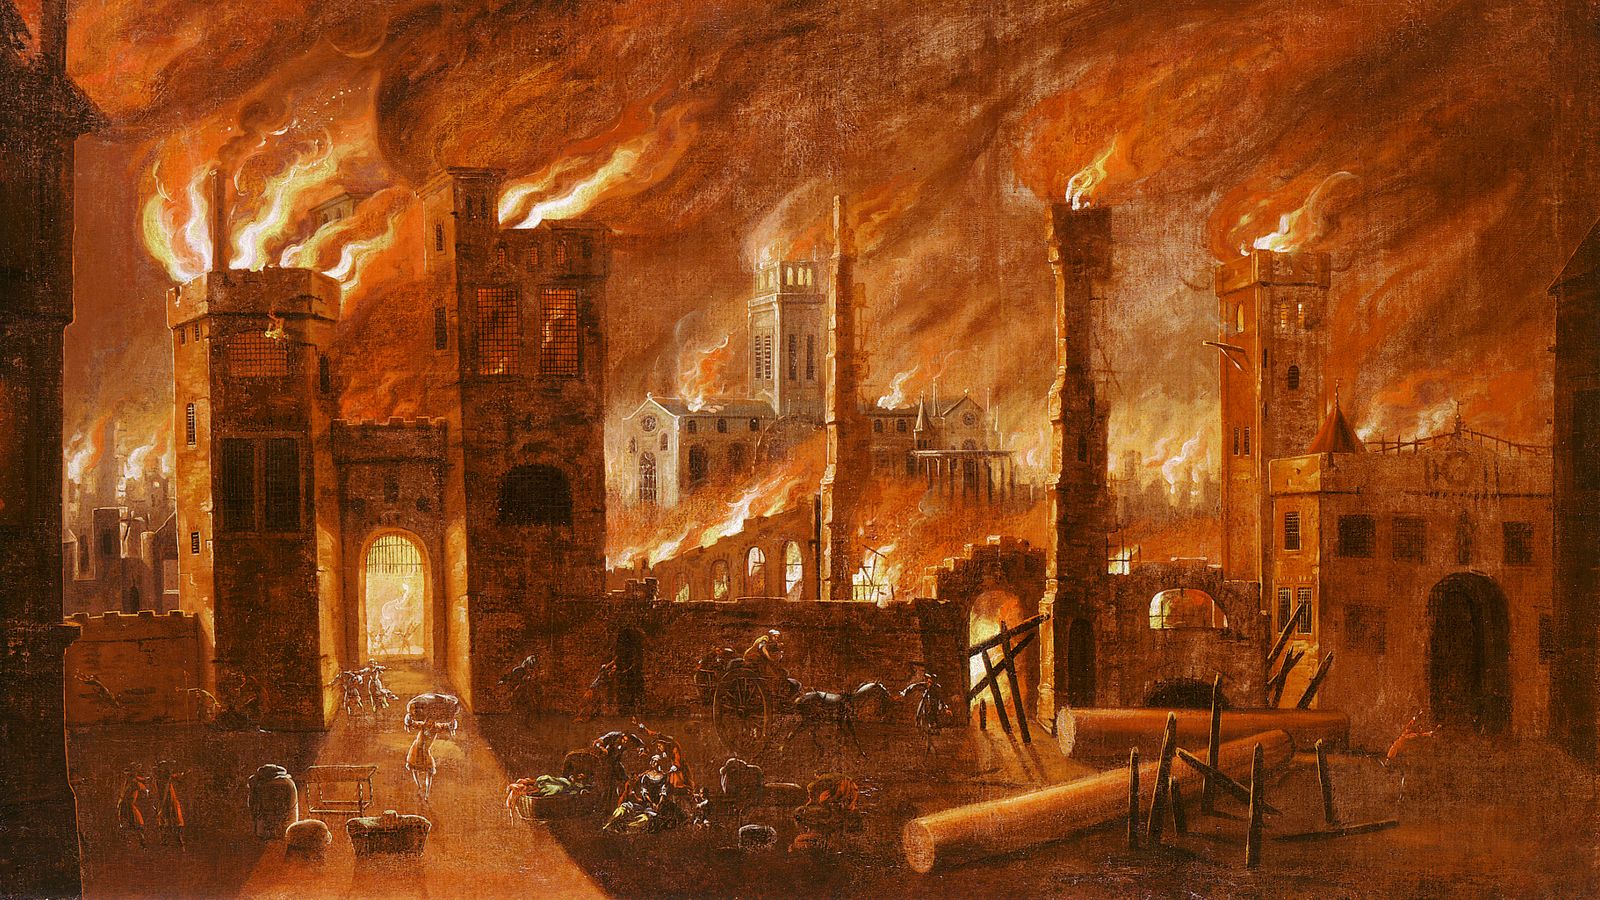 Големият пожар в Лондон: Първият човек, който вдигна тревога за пламъците, е идентифициран 357 години по-късно